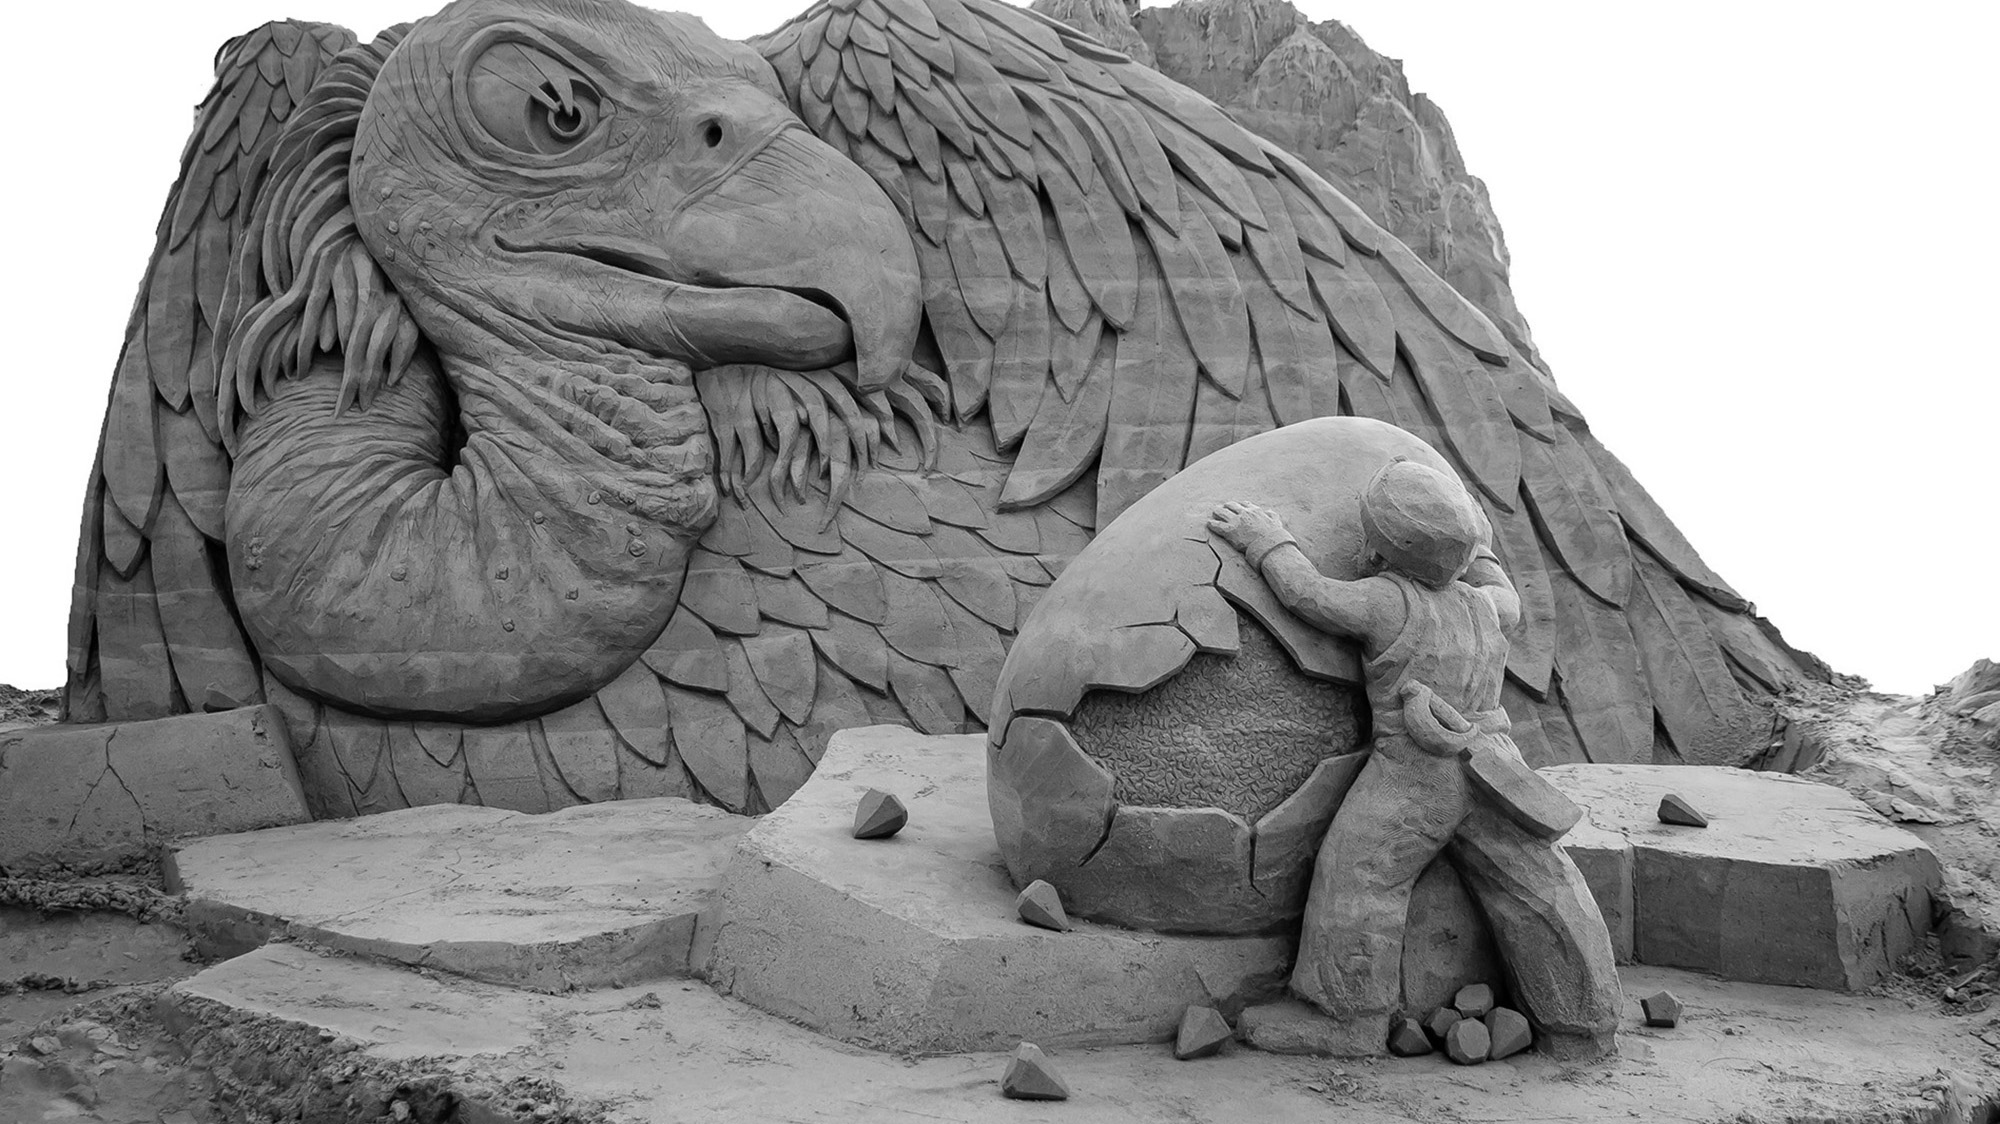 Credit: Sandskulpturen Ausstellung Travemunde - Yves Weiske/Newsflash